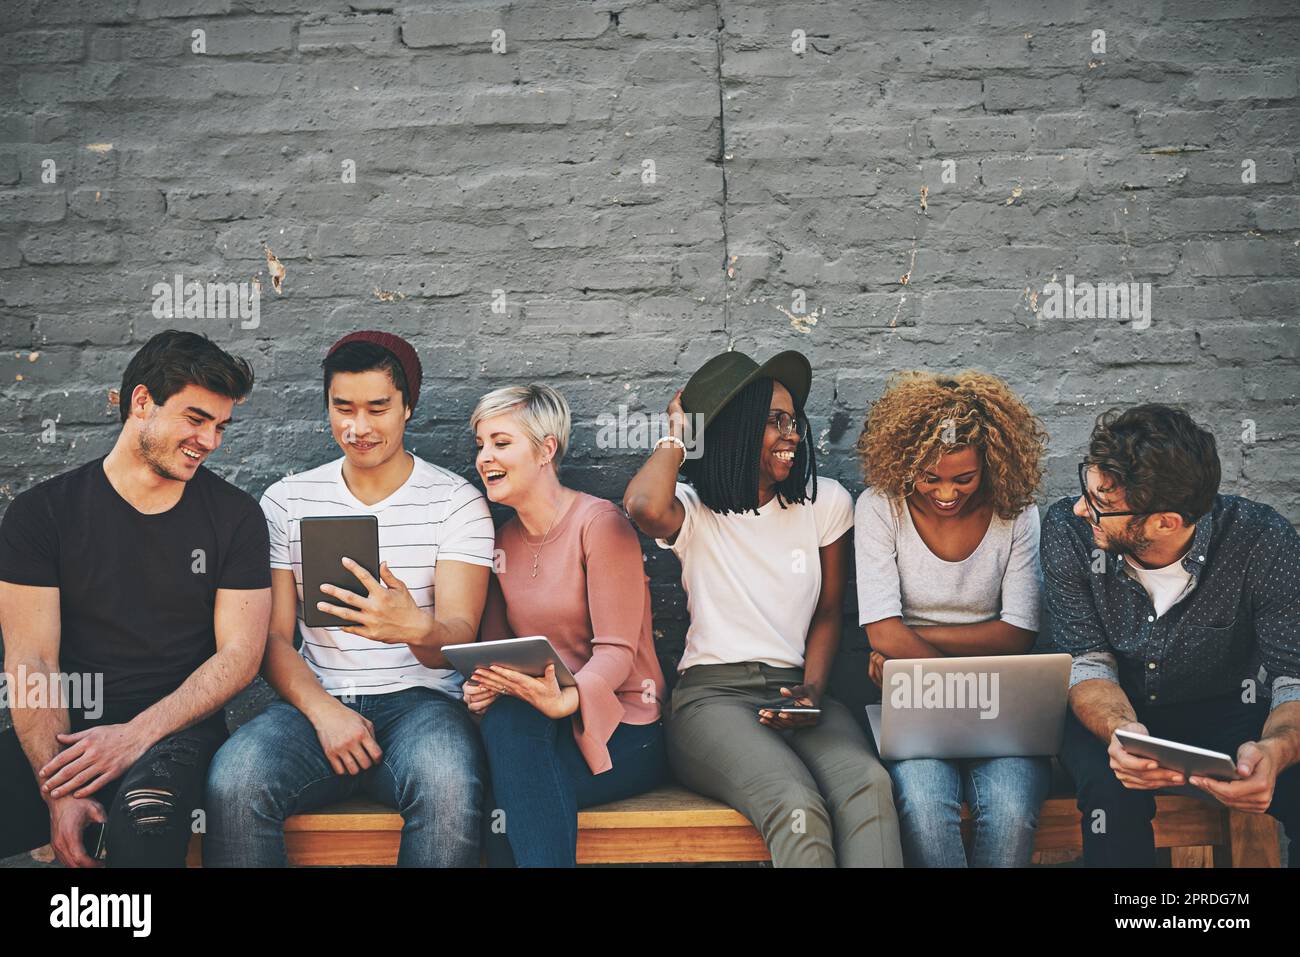 Grupo de amigos en dispositivos digitales y redes sociales sentados juntos mientras sonríen y hablan. La tecnología obsesionó a los trabajadores remotos en línea tomando un descanso. Equipo creativo casual feliz afuera Foto de stock